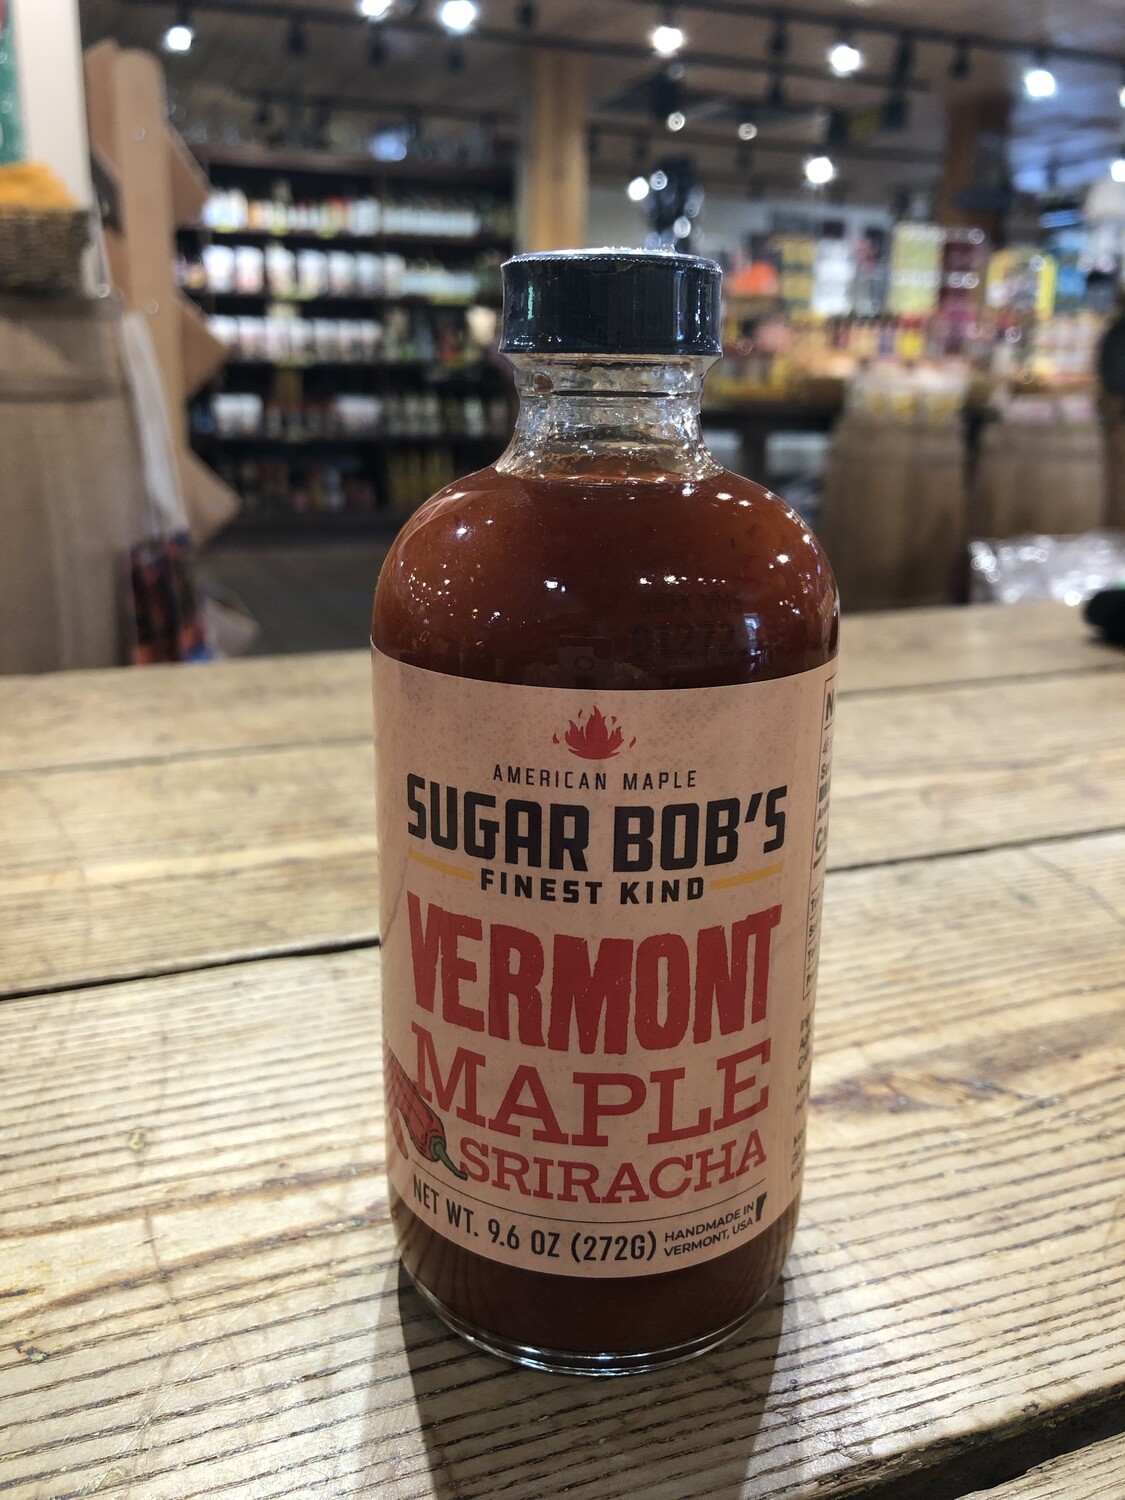 Vt Maple Sriracha